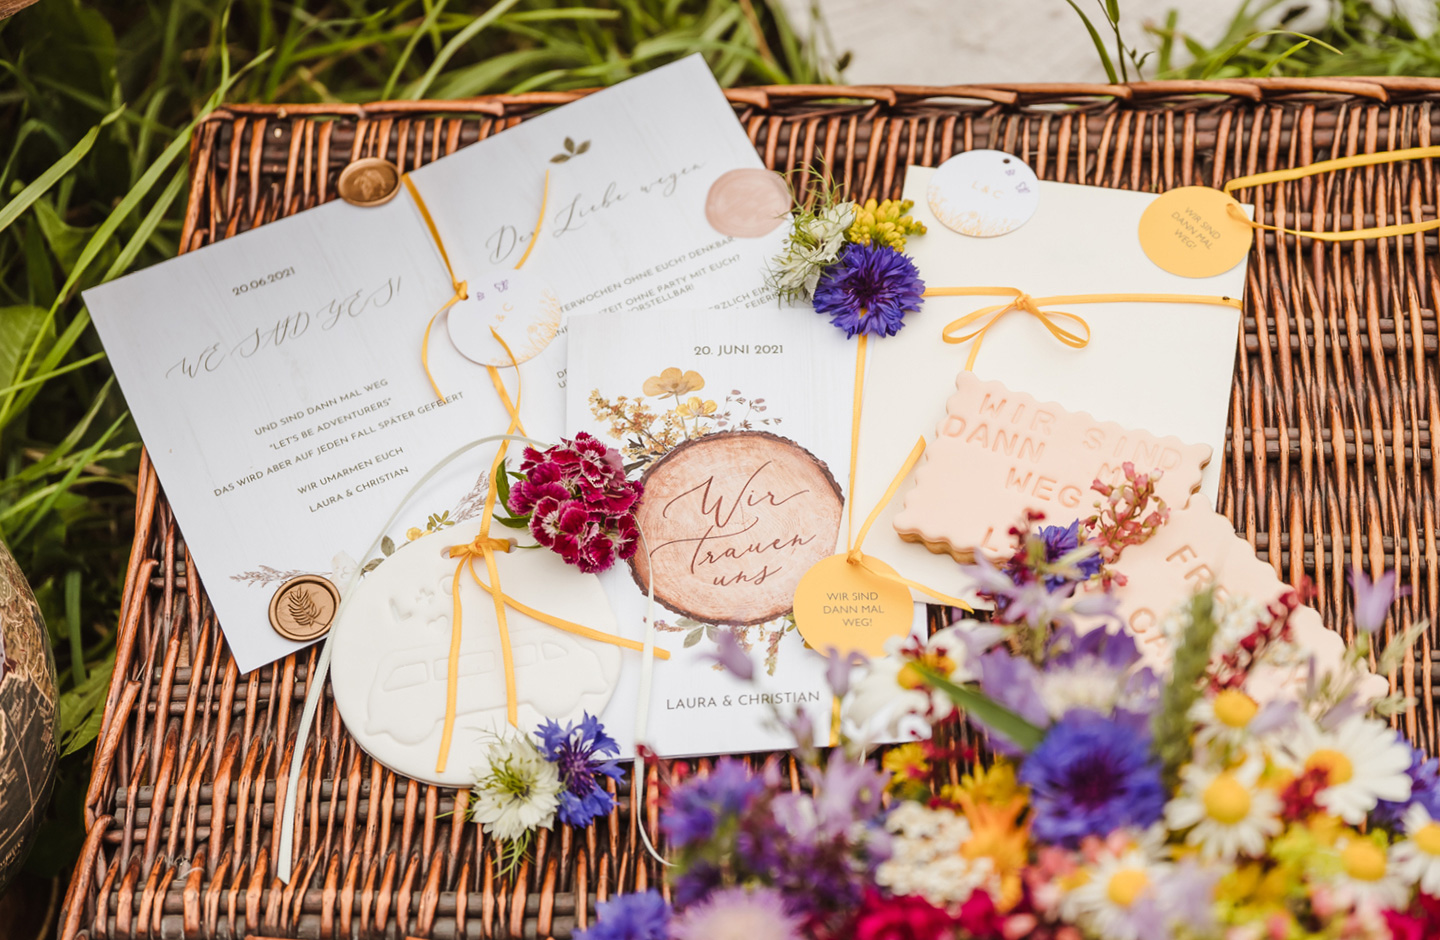 Hochzeitseinladung zur Camper Hochzeit liegt auf einer geflochtenen Holz-Kiste und ist dekoriert mit Wildblumen.